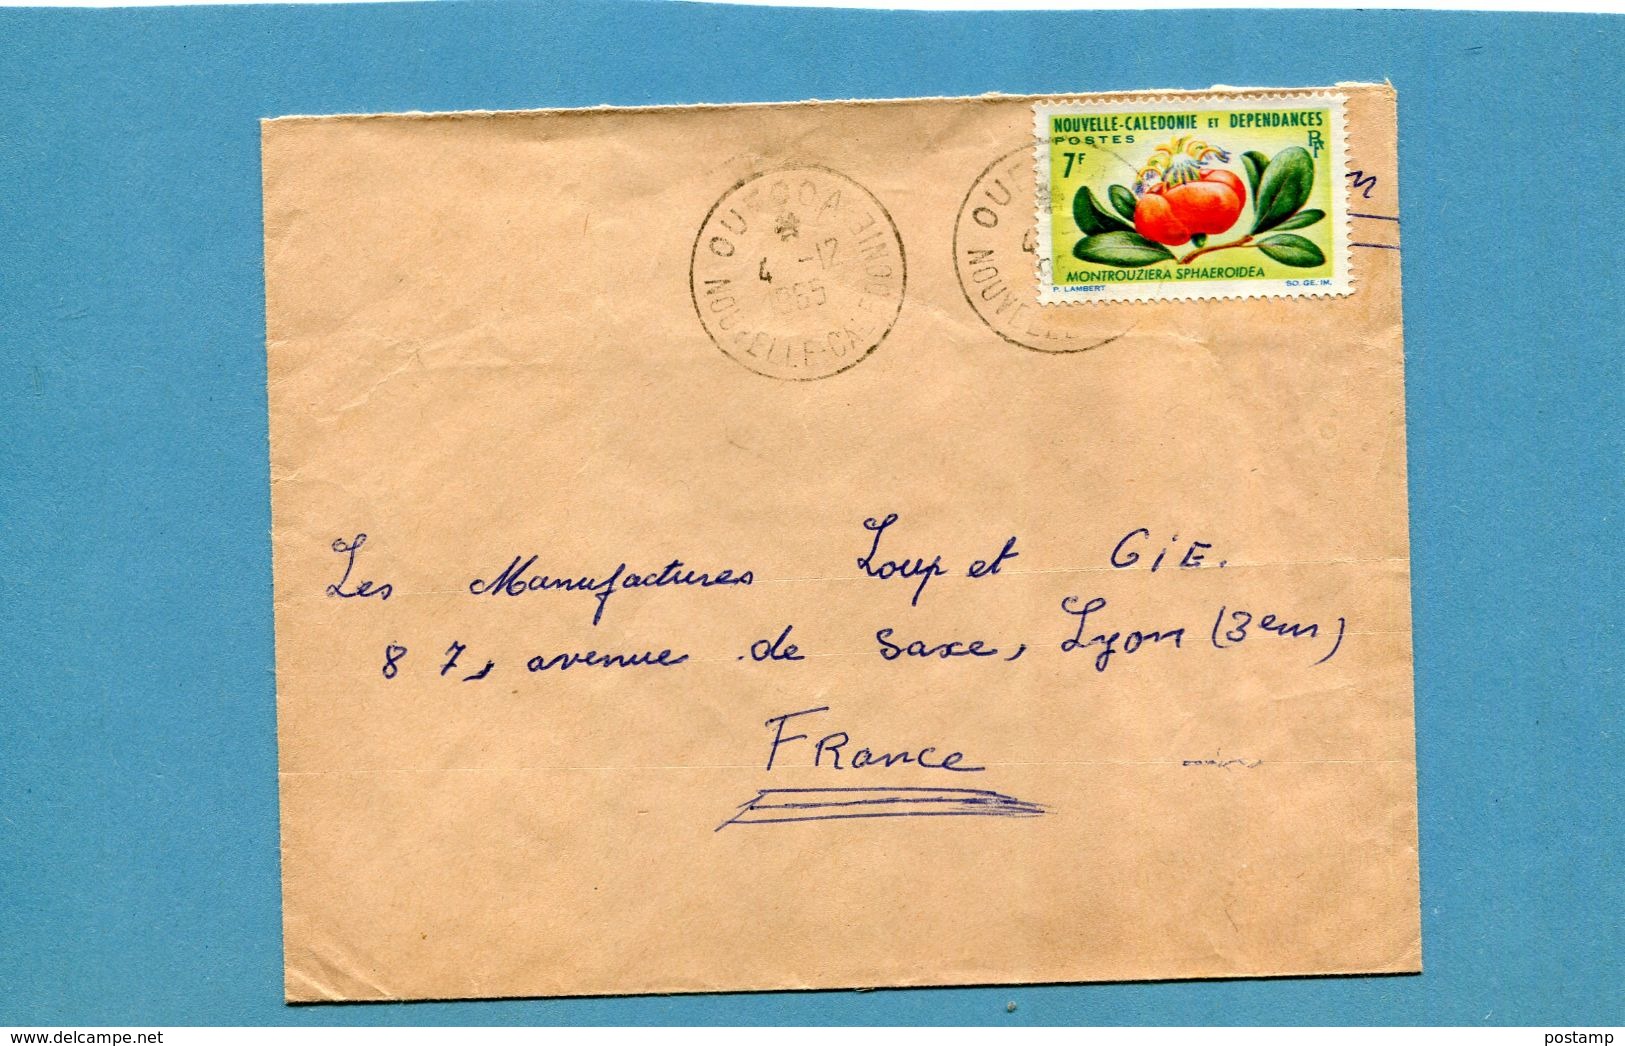 Marcophilie Nouvelle Calédonie-lettre  >Françe-cad OUECOA 1965- Stamps N°319 Flower-montrouziera - Covers & Documents